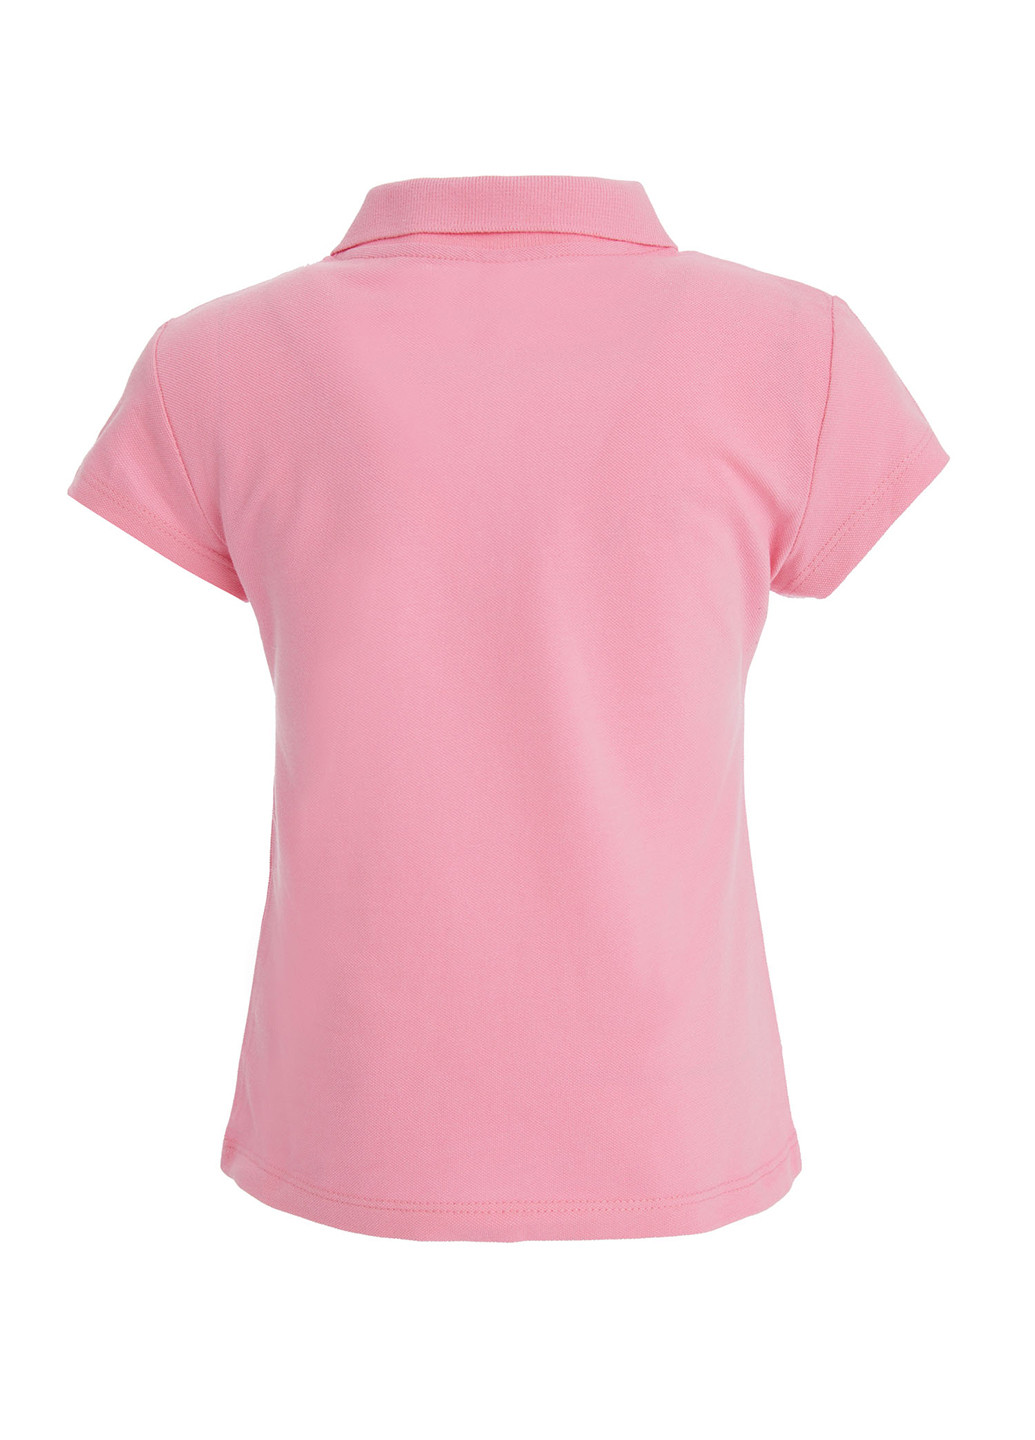 Светло-розовая детская футболка-поло для девочки DeFacto однотонная